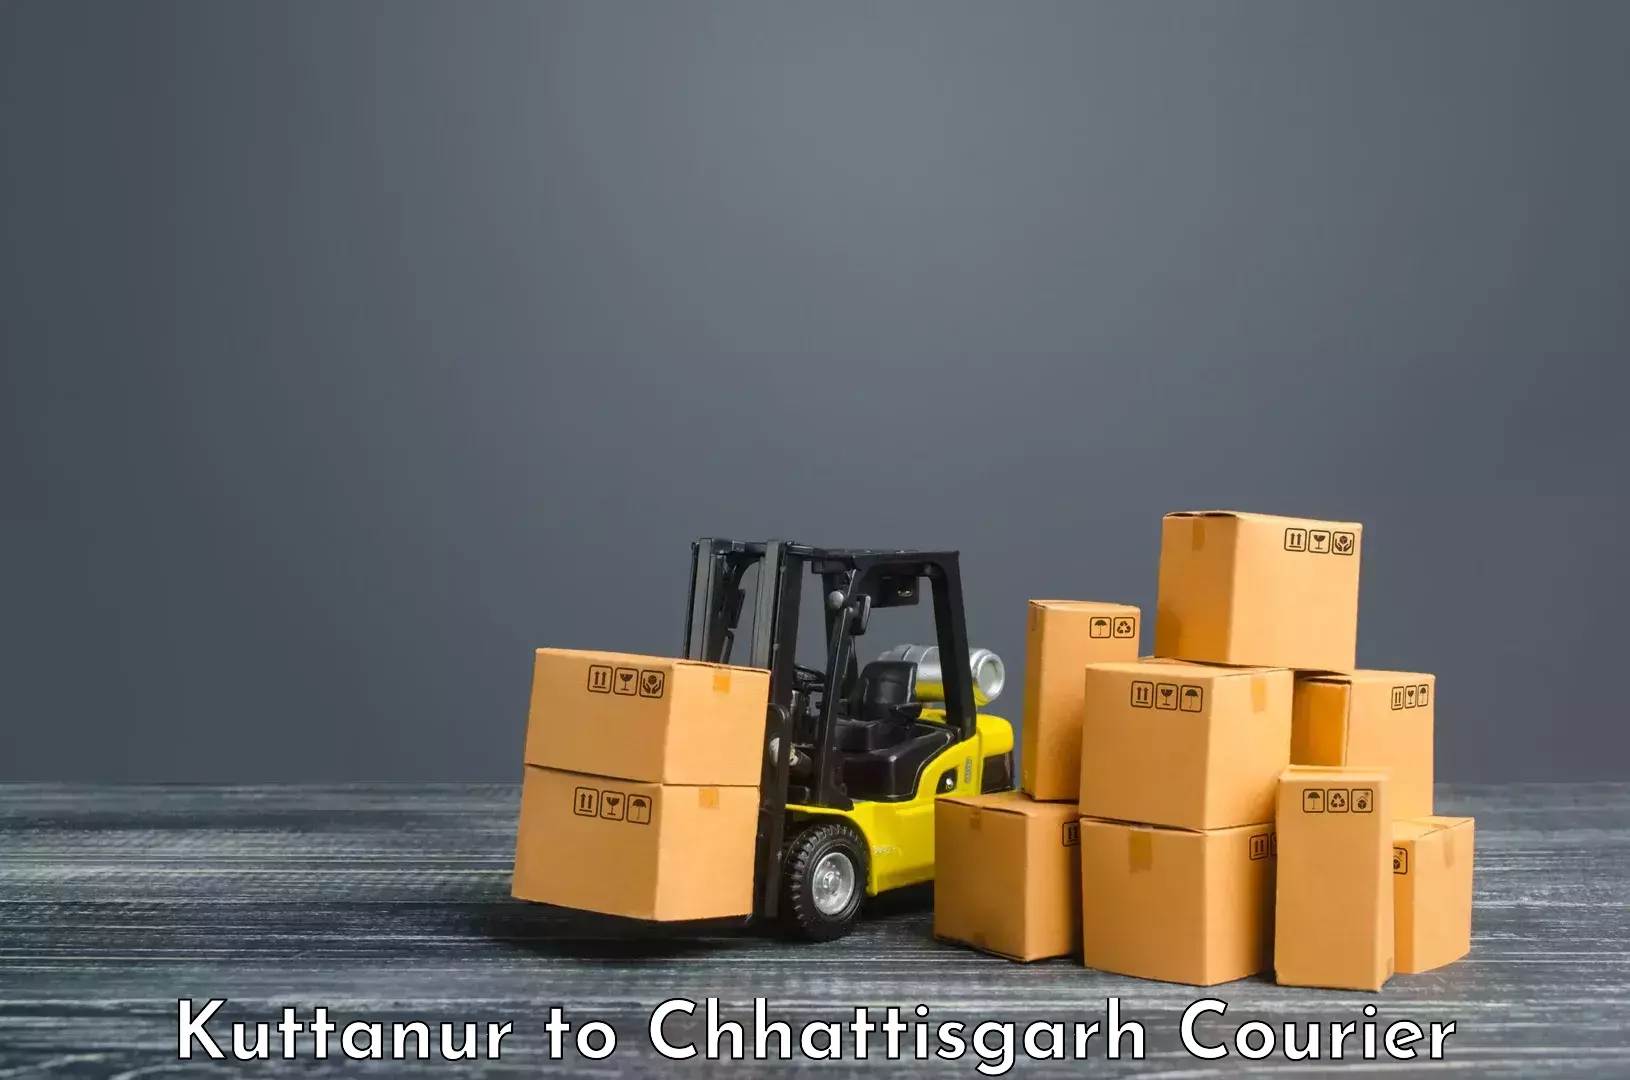 Local delivery service Kuttanur to Chhattisgarh